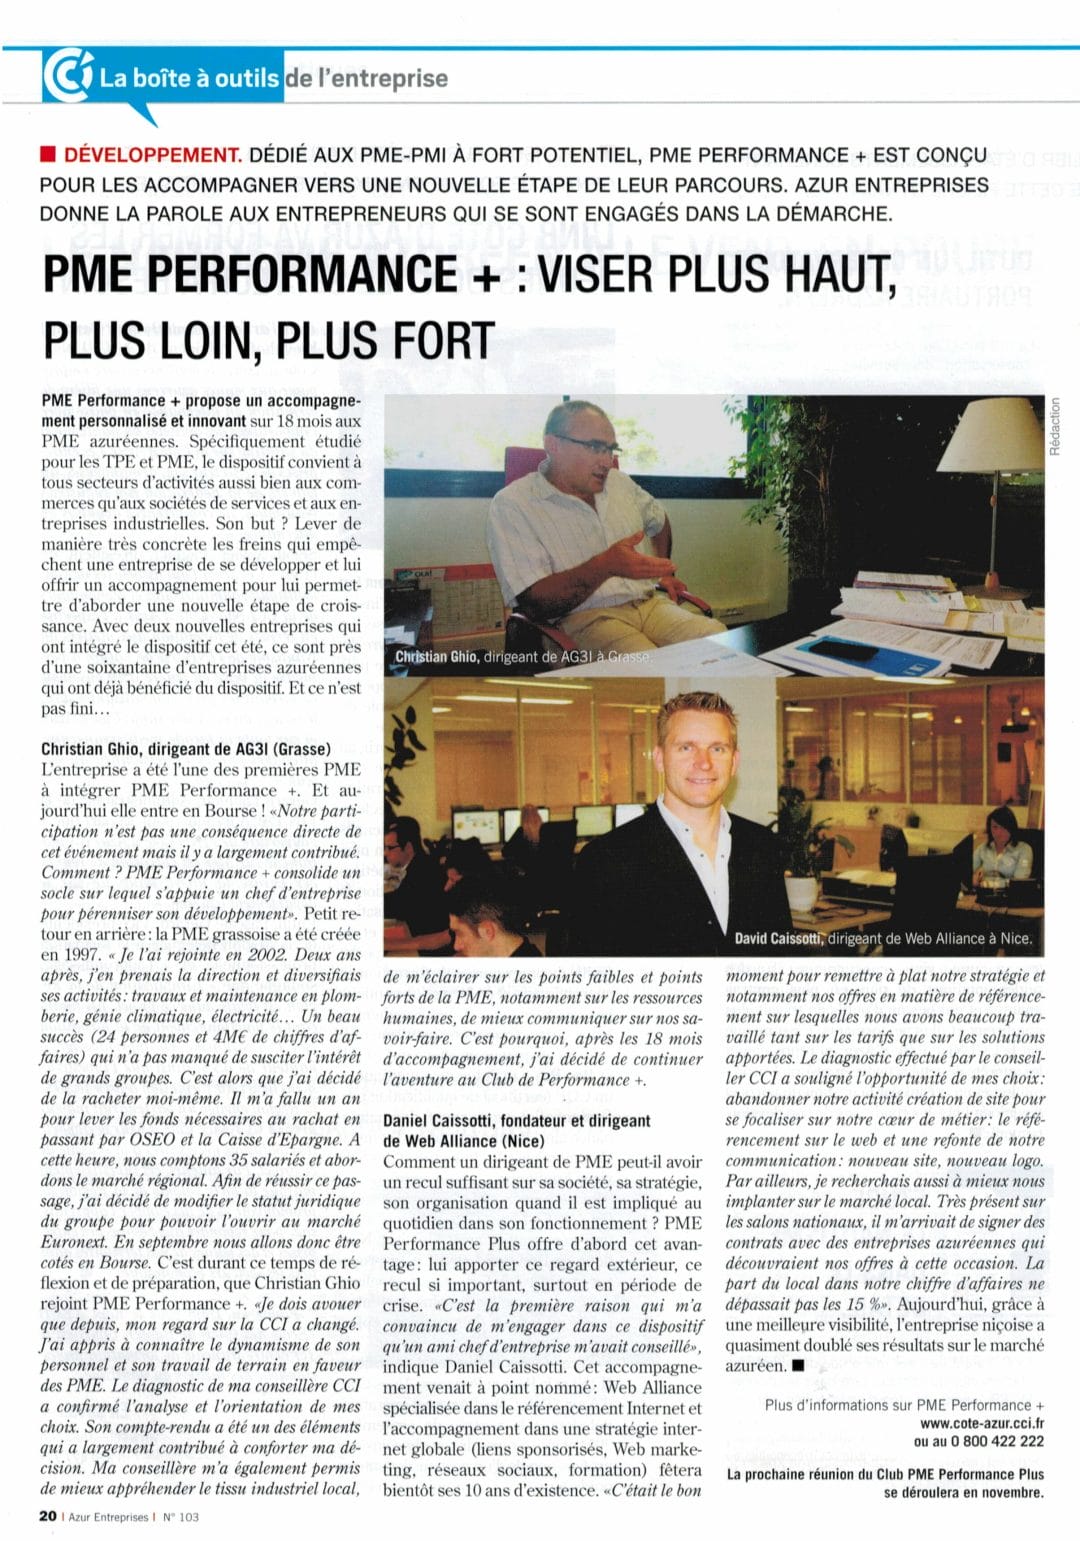 L’article de presse publié par la CCI dans le magazine économique de la Côte d’Azur